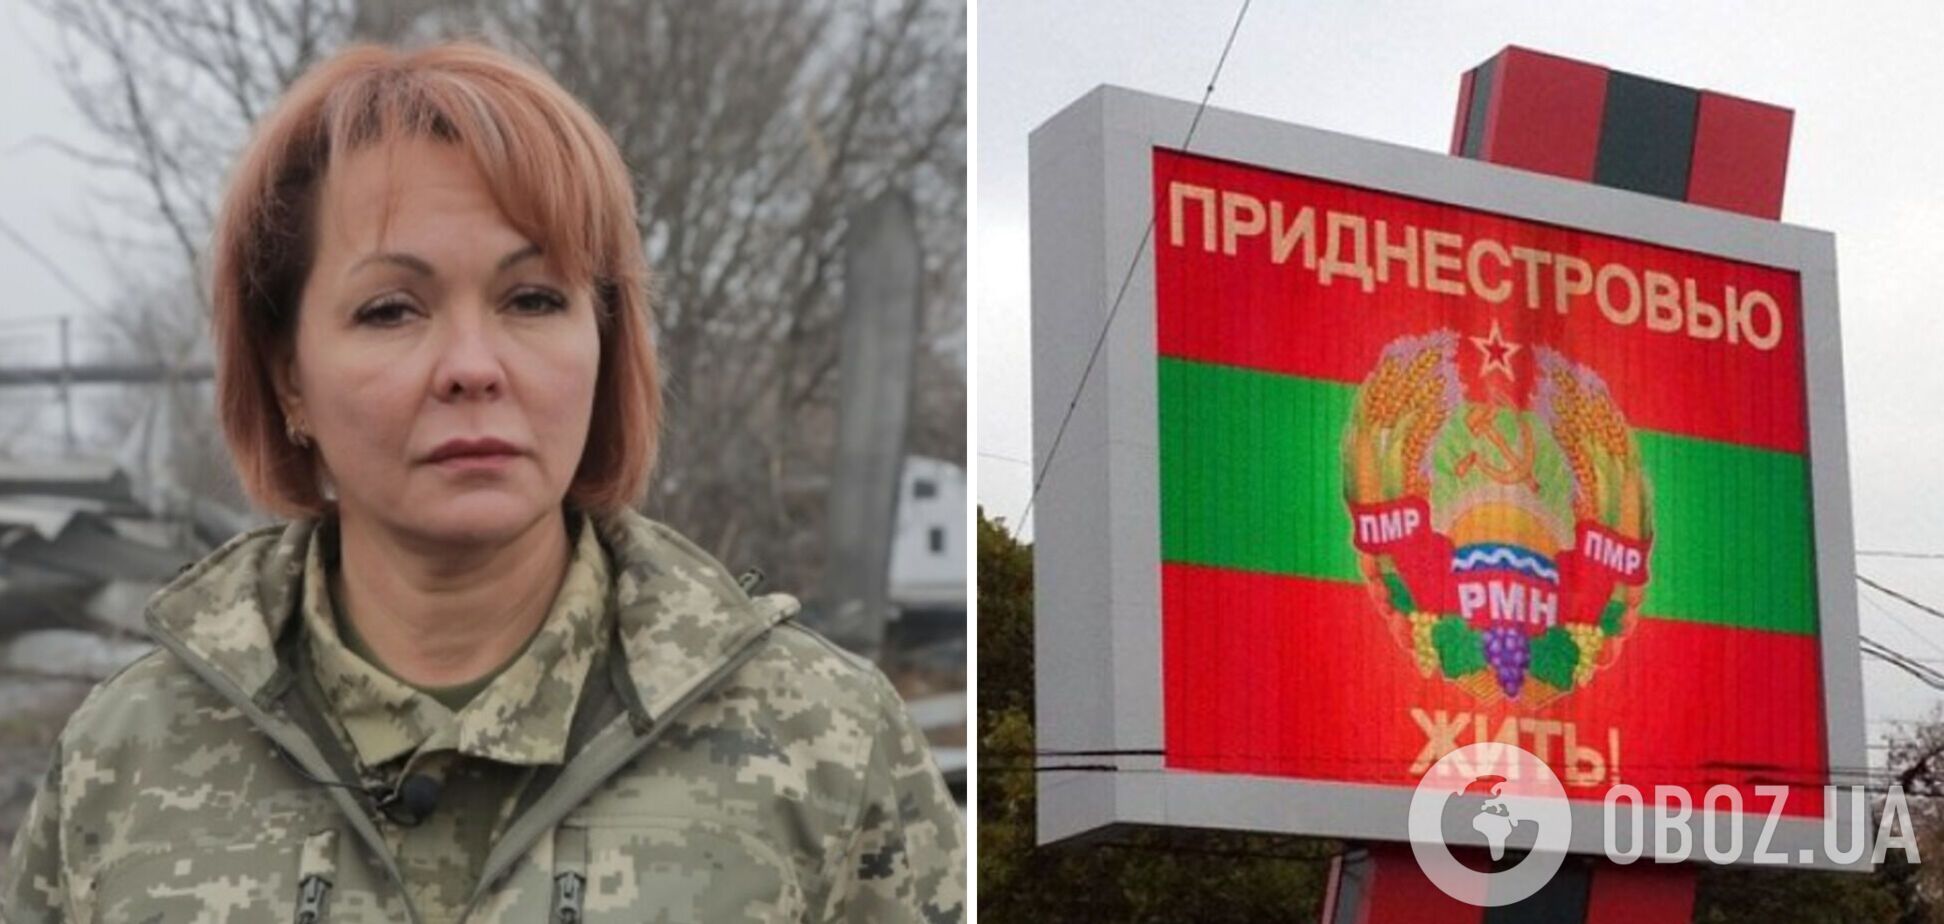 'Ще з початку розуміли загрозу': Гуменюк прояснила ситуацію із 'Придністров’ям'